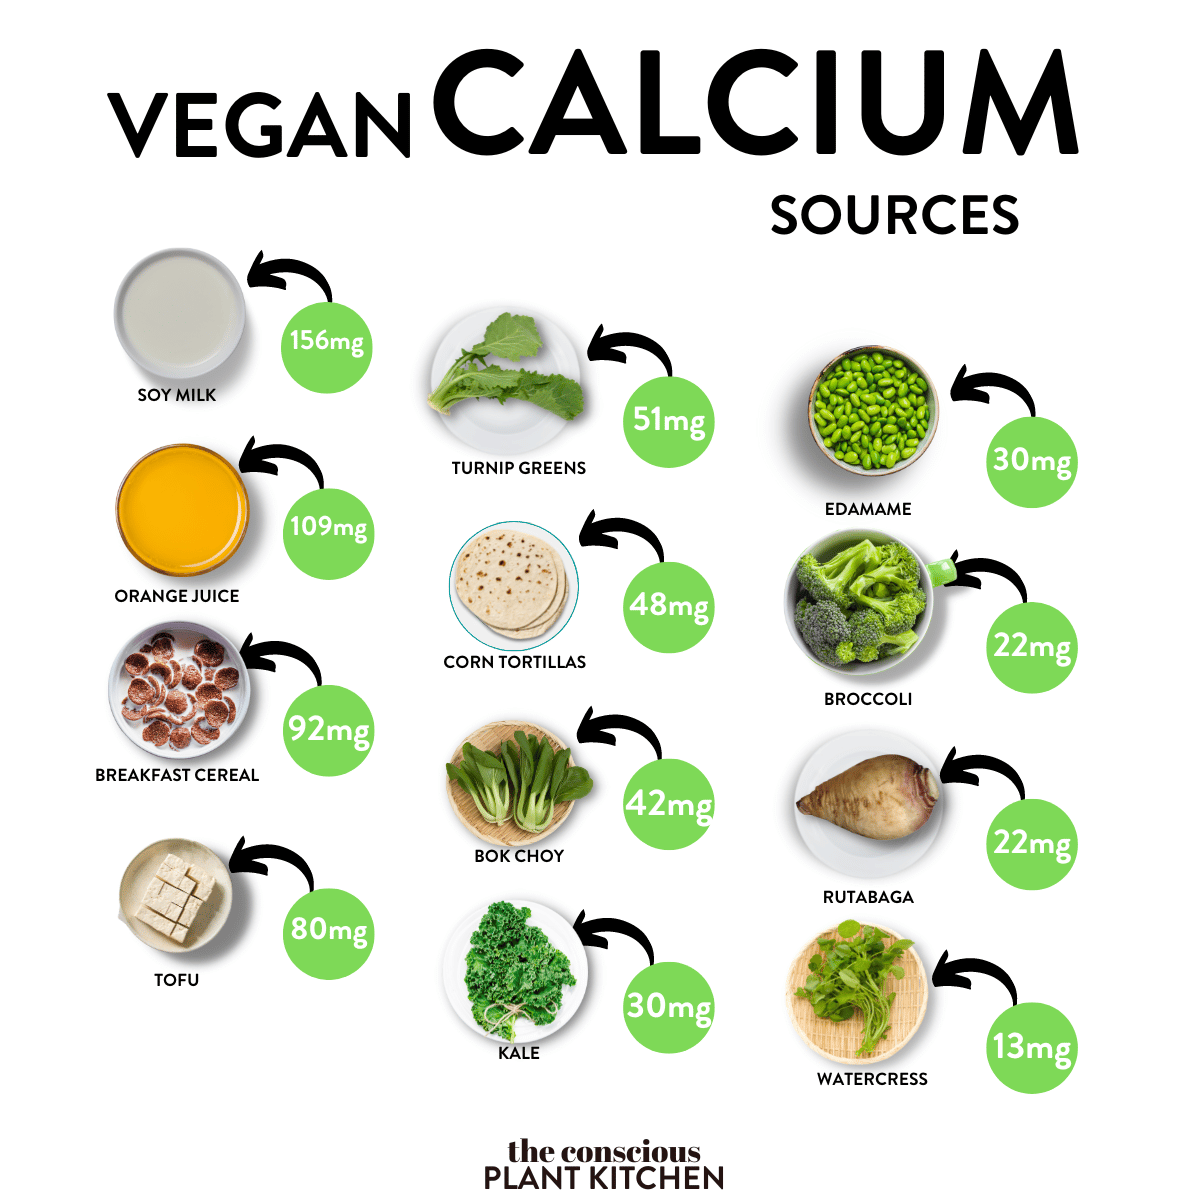 Vegan Calcium Sourrces